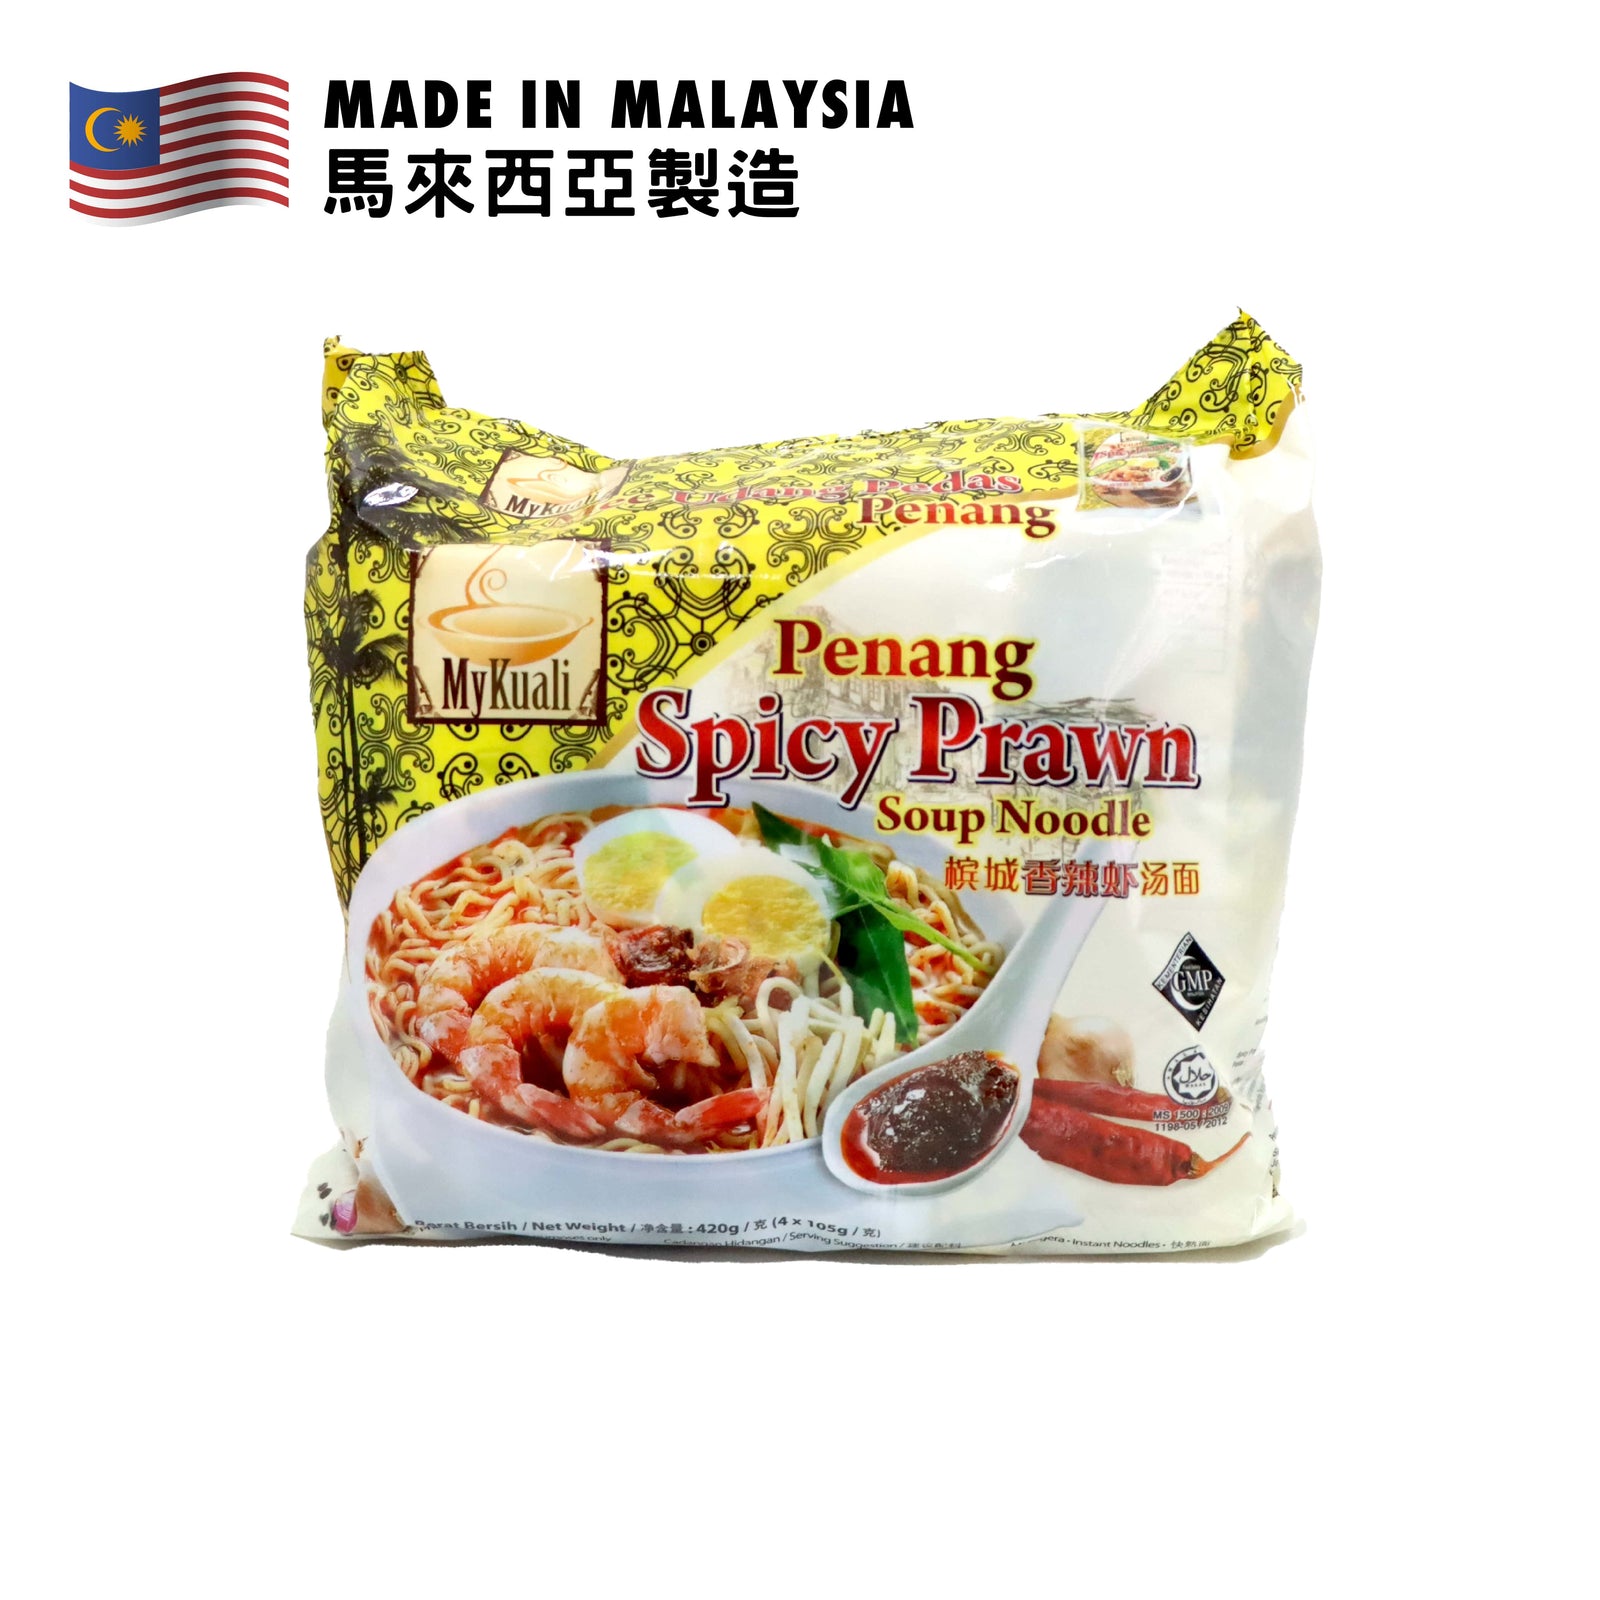 MyKuali Penang Spicy Prawn Soup Noodle 105g x 4